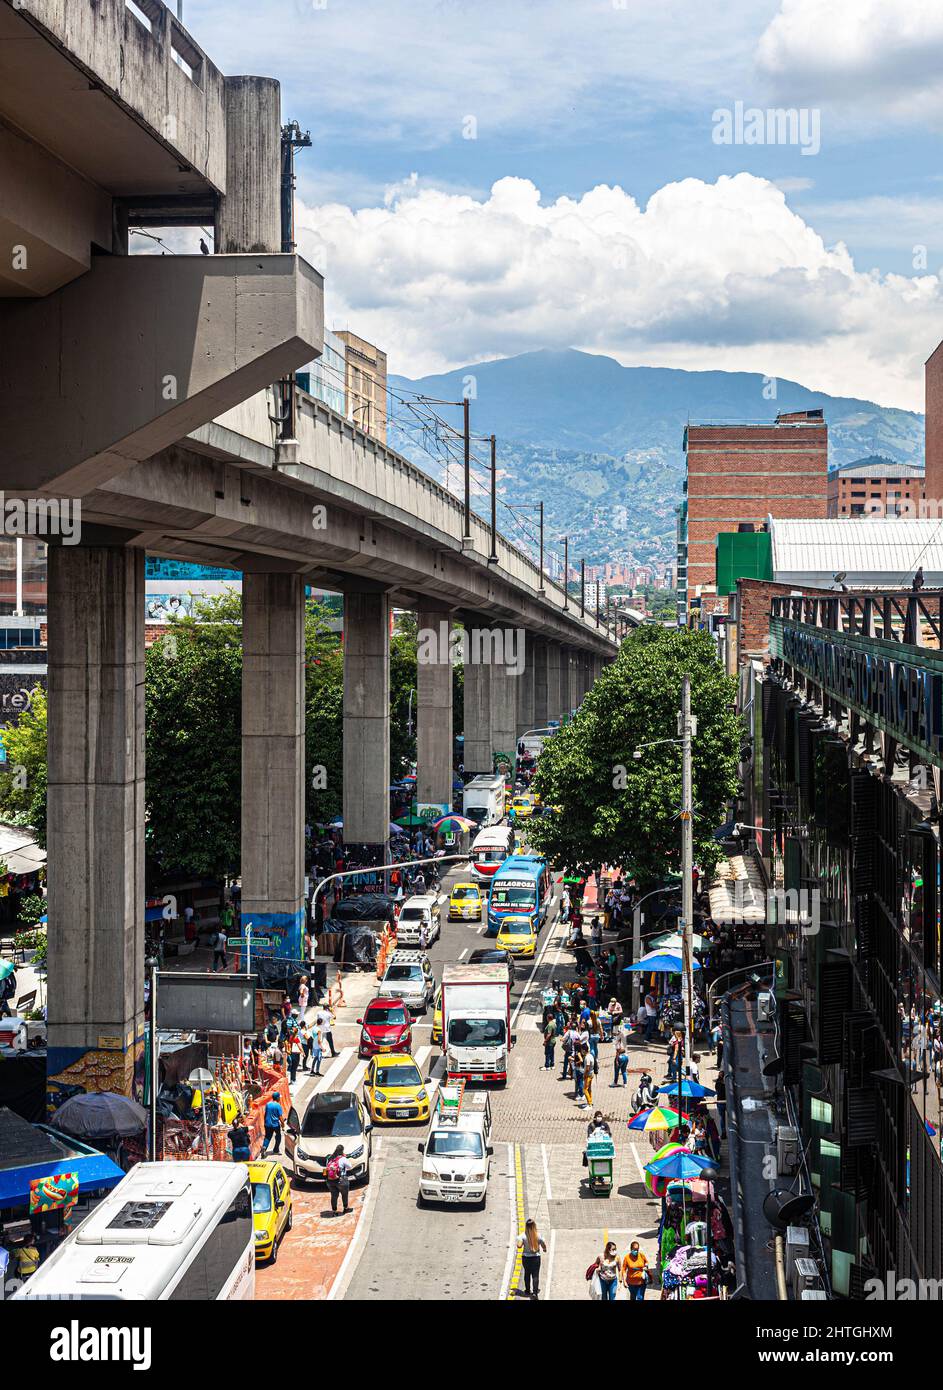 Vue en grand angle de la circulation routière dans une rue du centre de Medellín, Colombie. Banque D'Images